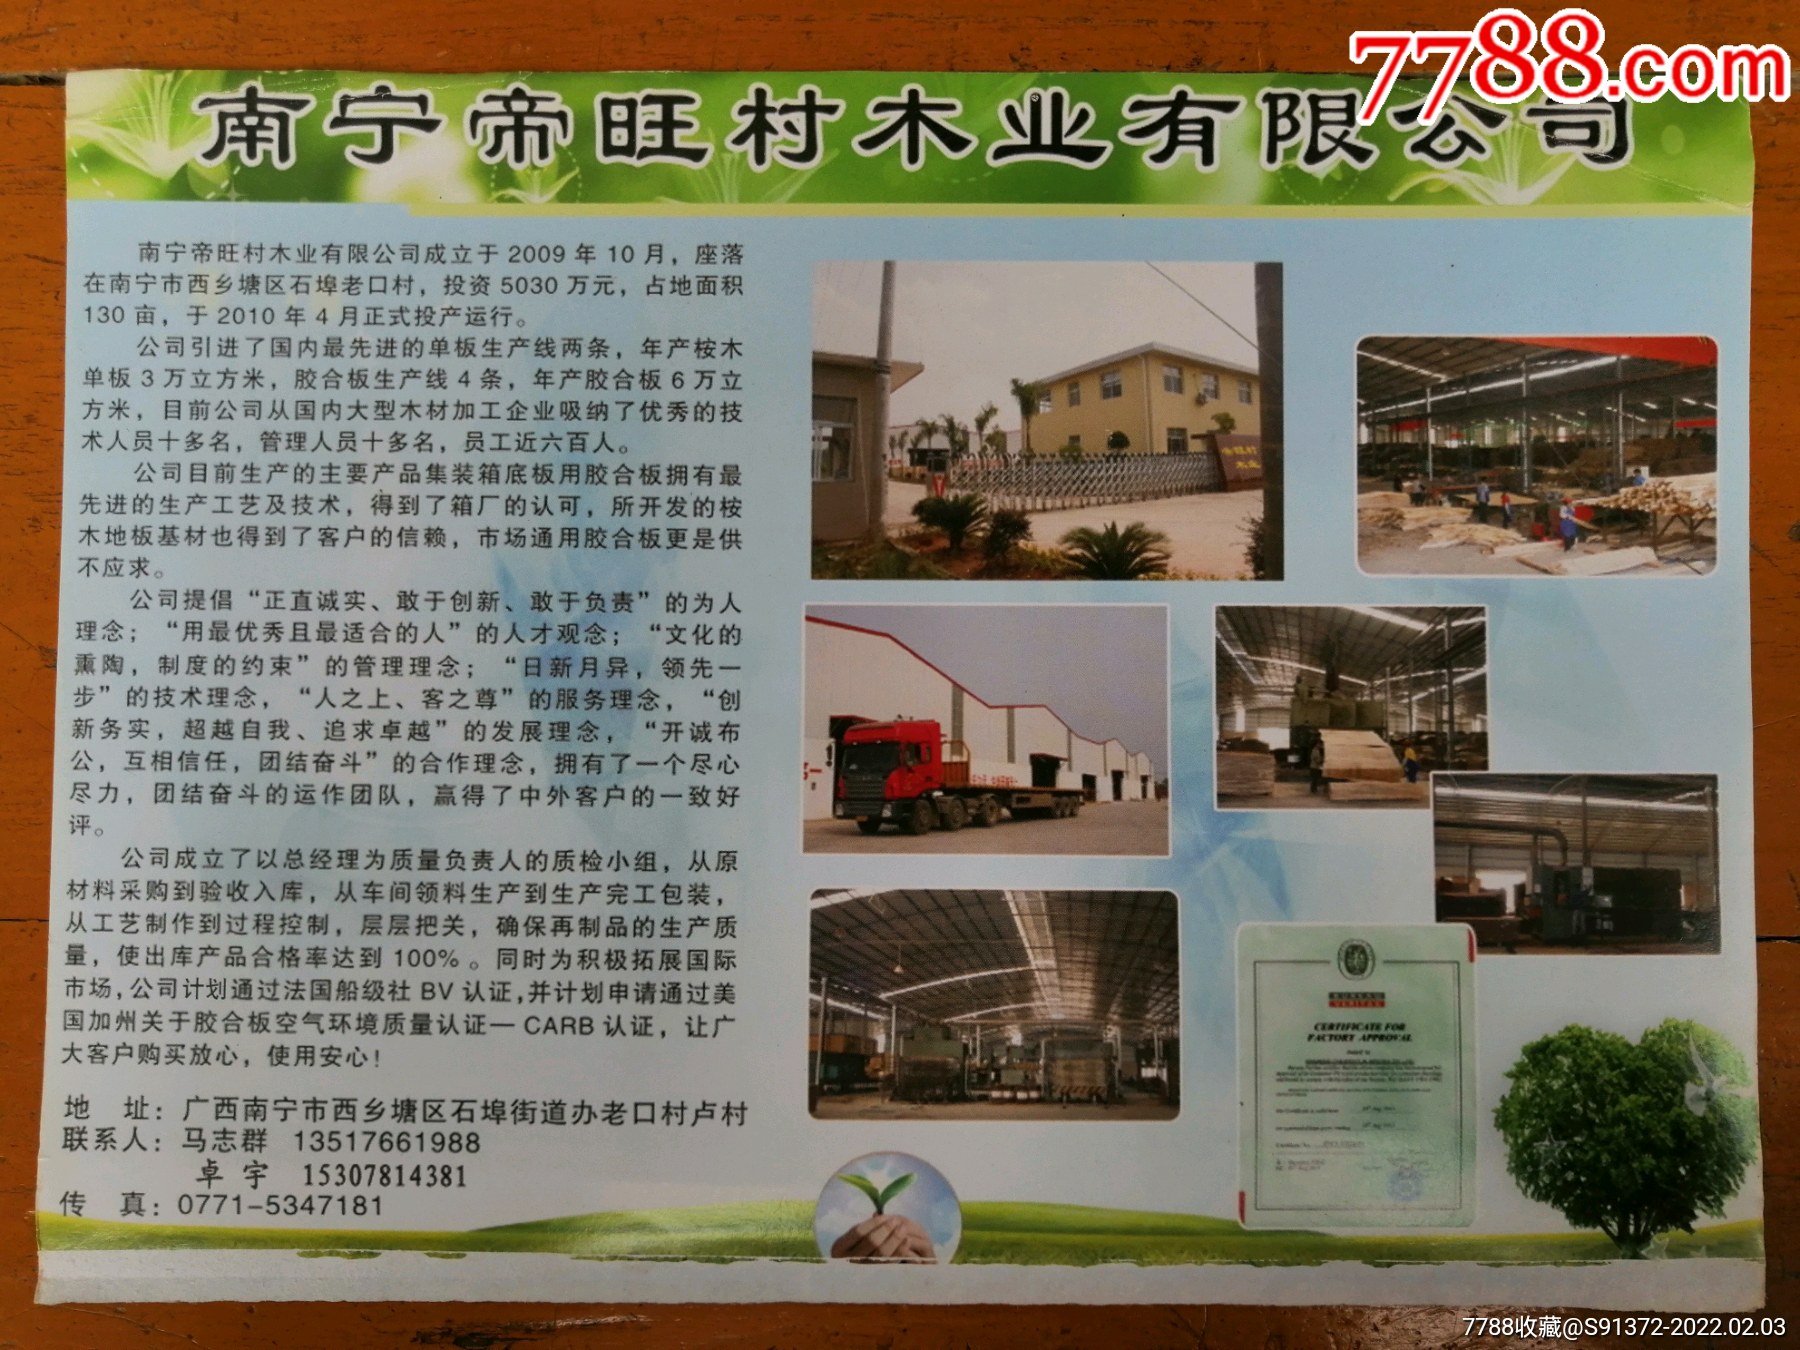 南宁帝旺村木业有限公司,广告牌,其他图案,广告牌,纸质,21世纪初,广西